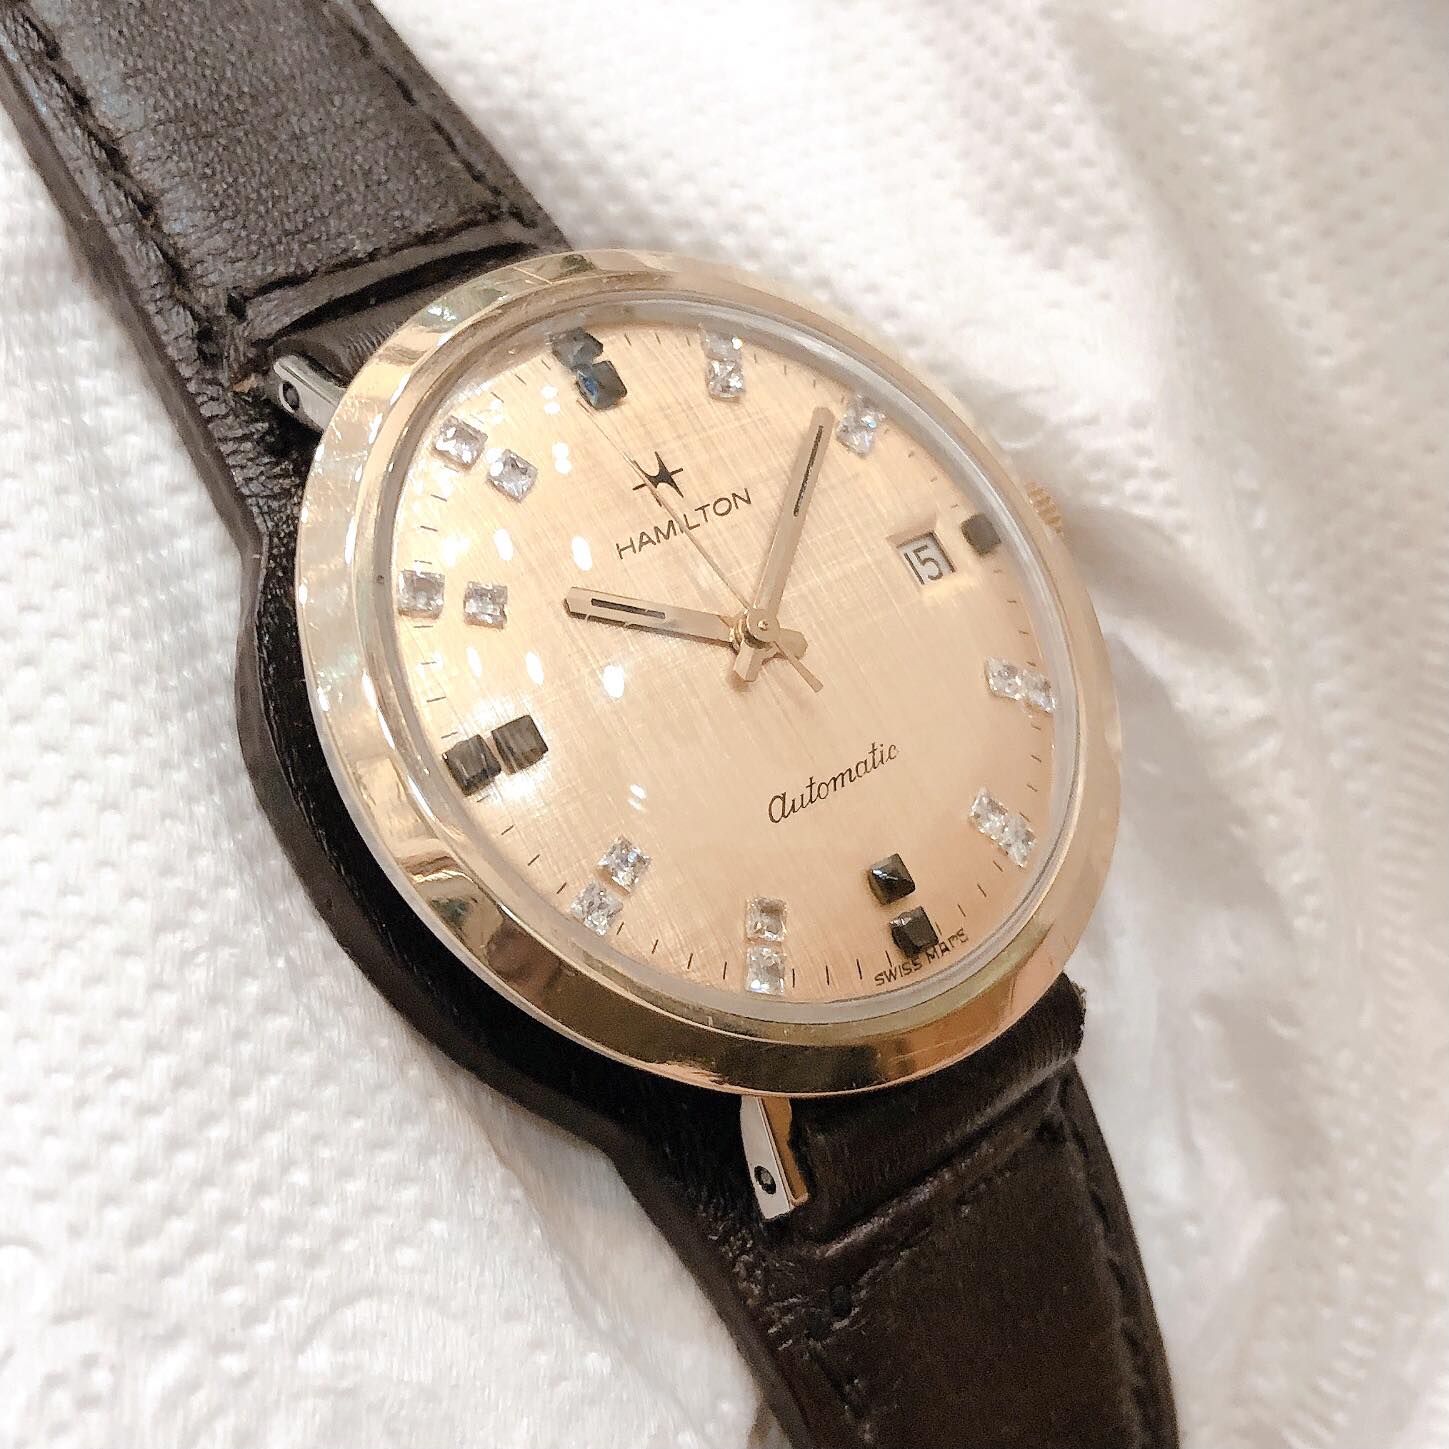 Đồng hồ cổ Hamilton Automatic DMI chính hãng thuỵ sỹ